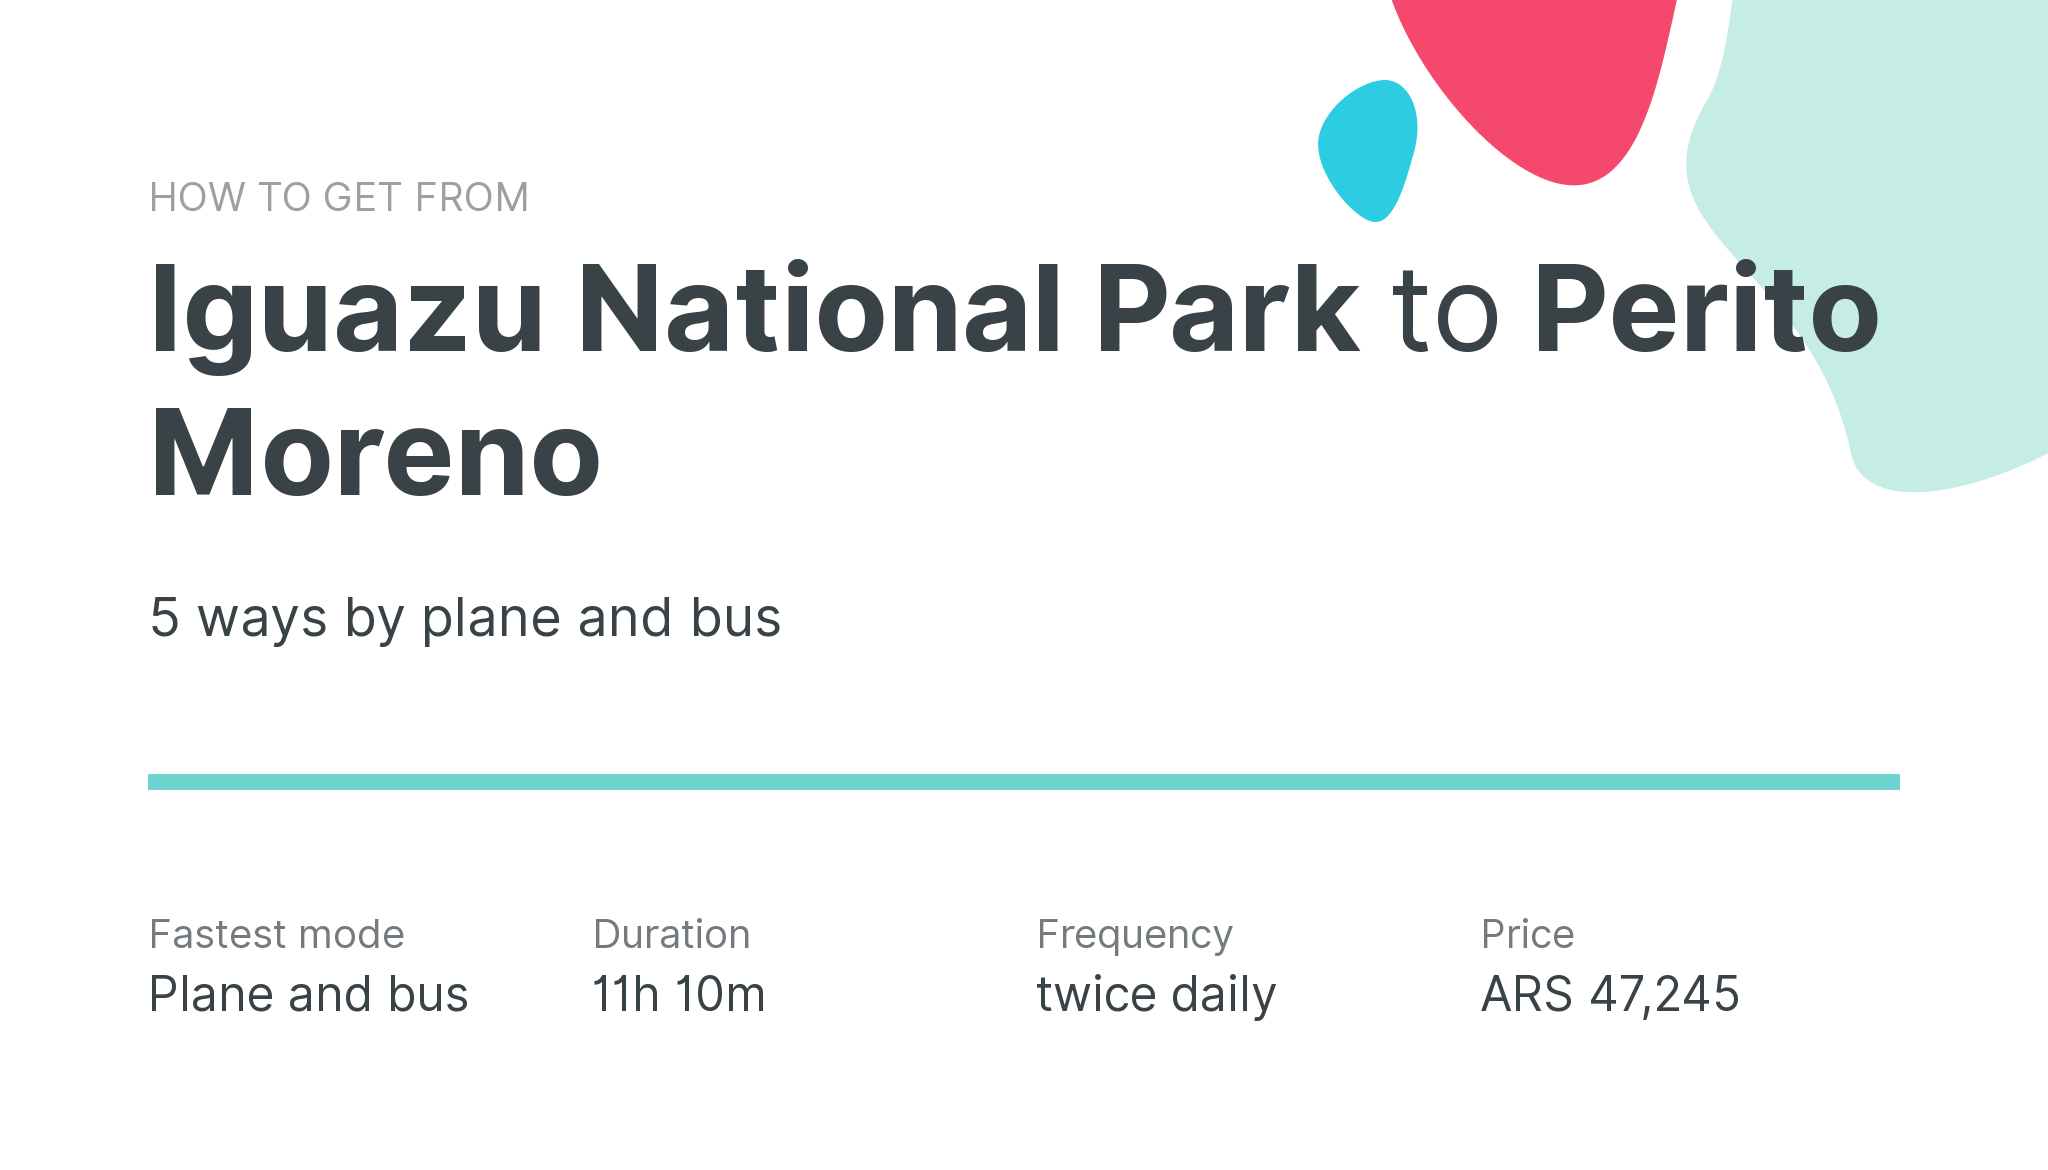 How do I get from Iguazu National Park to Perito Moreno